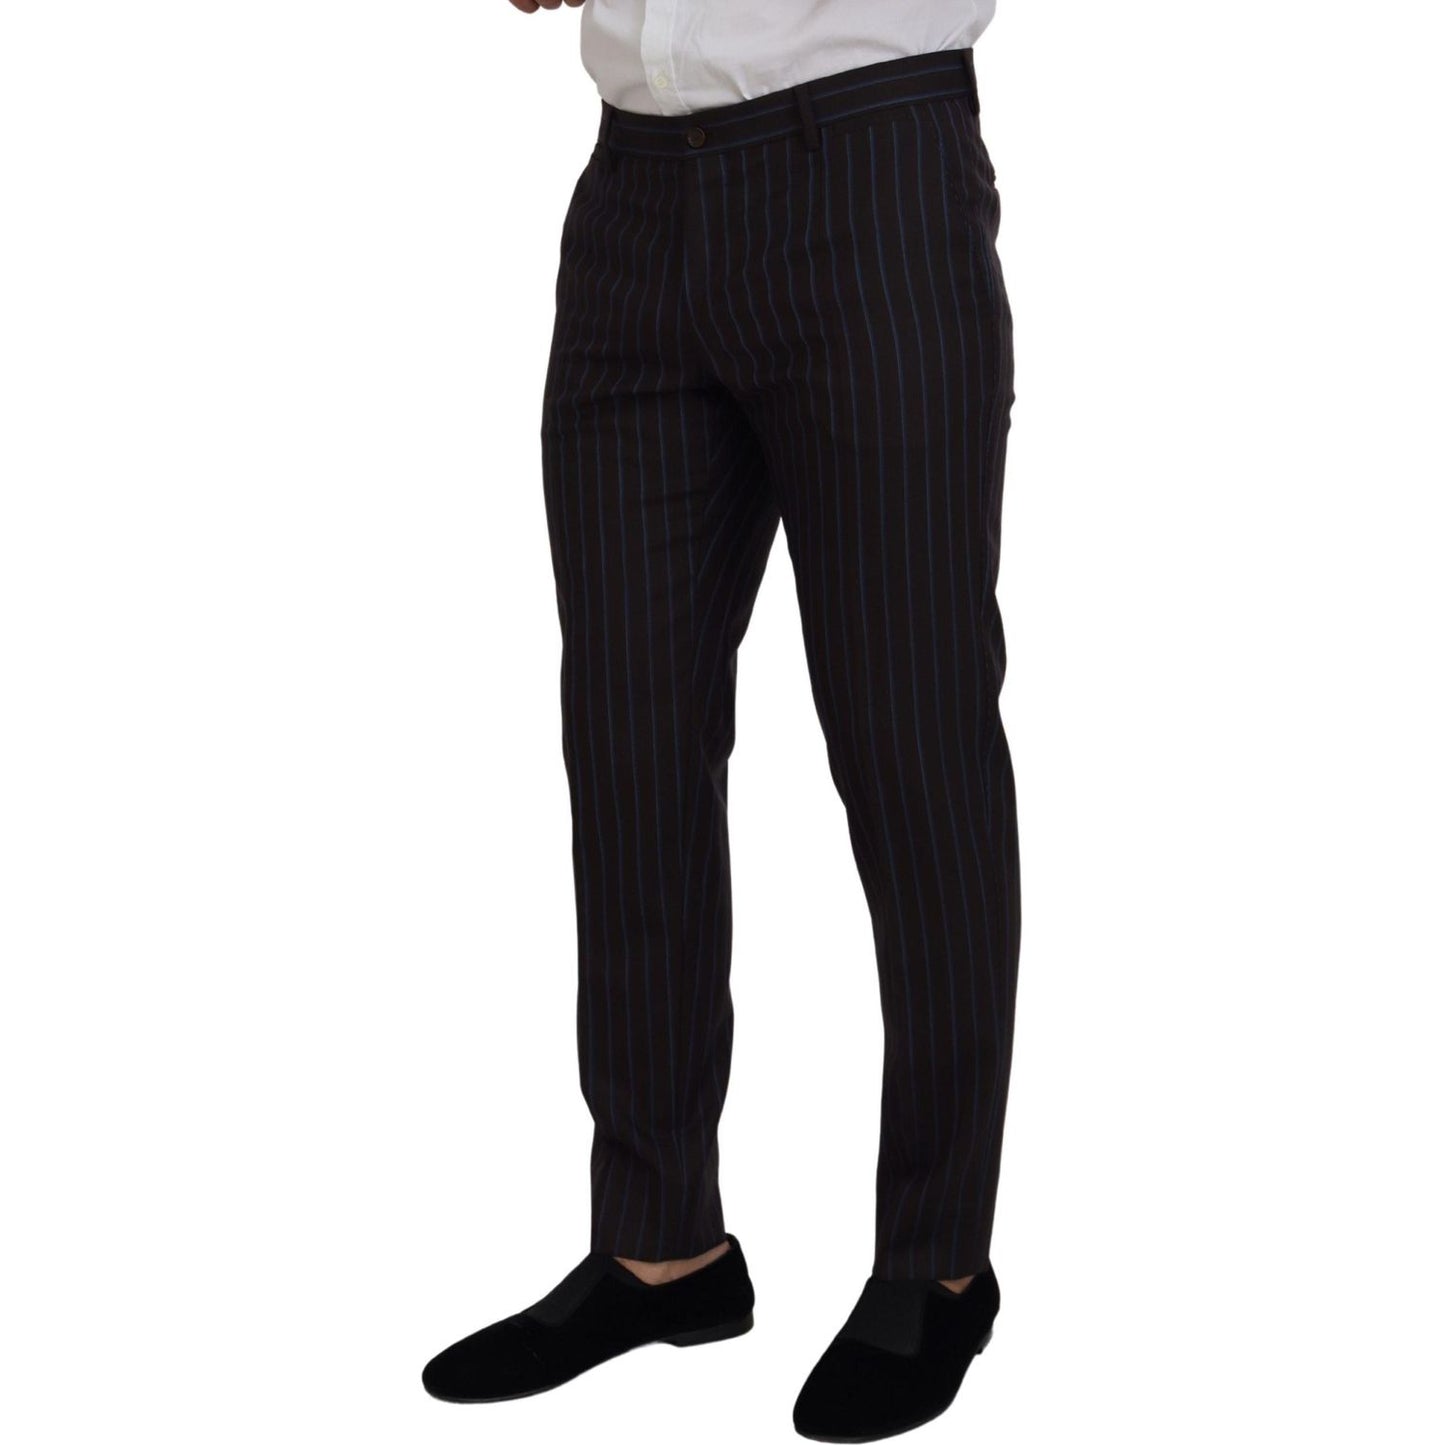 Dolce & Gabbana Elegant Black Striped Virgin Wool Suit black-striped-wool-formal-2-piece-suit